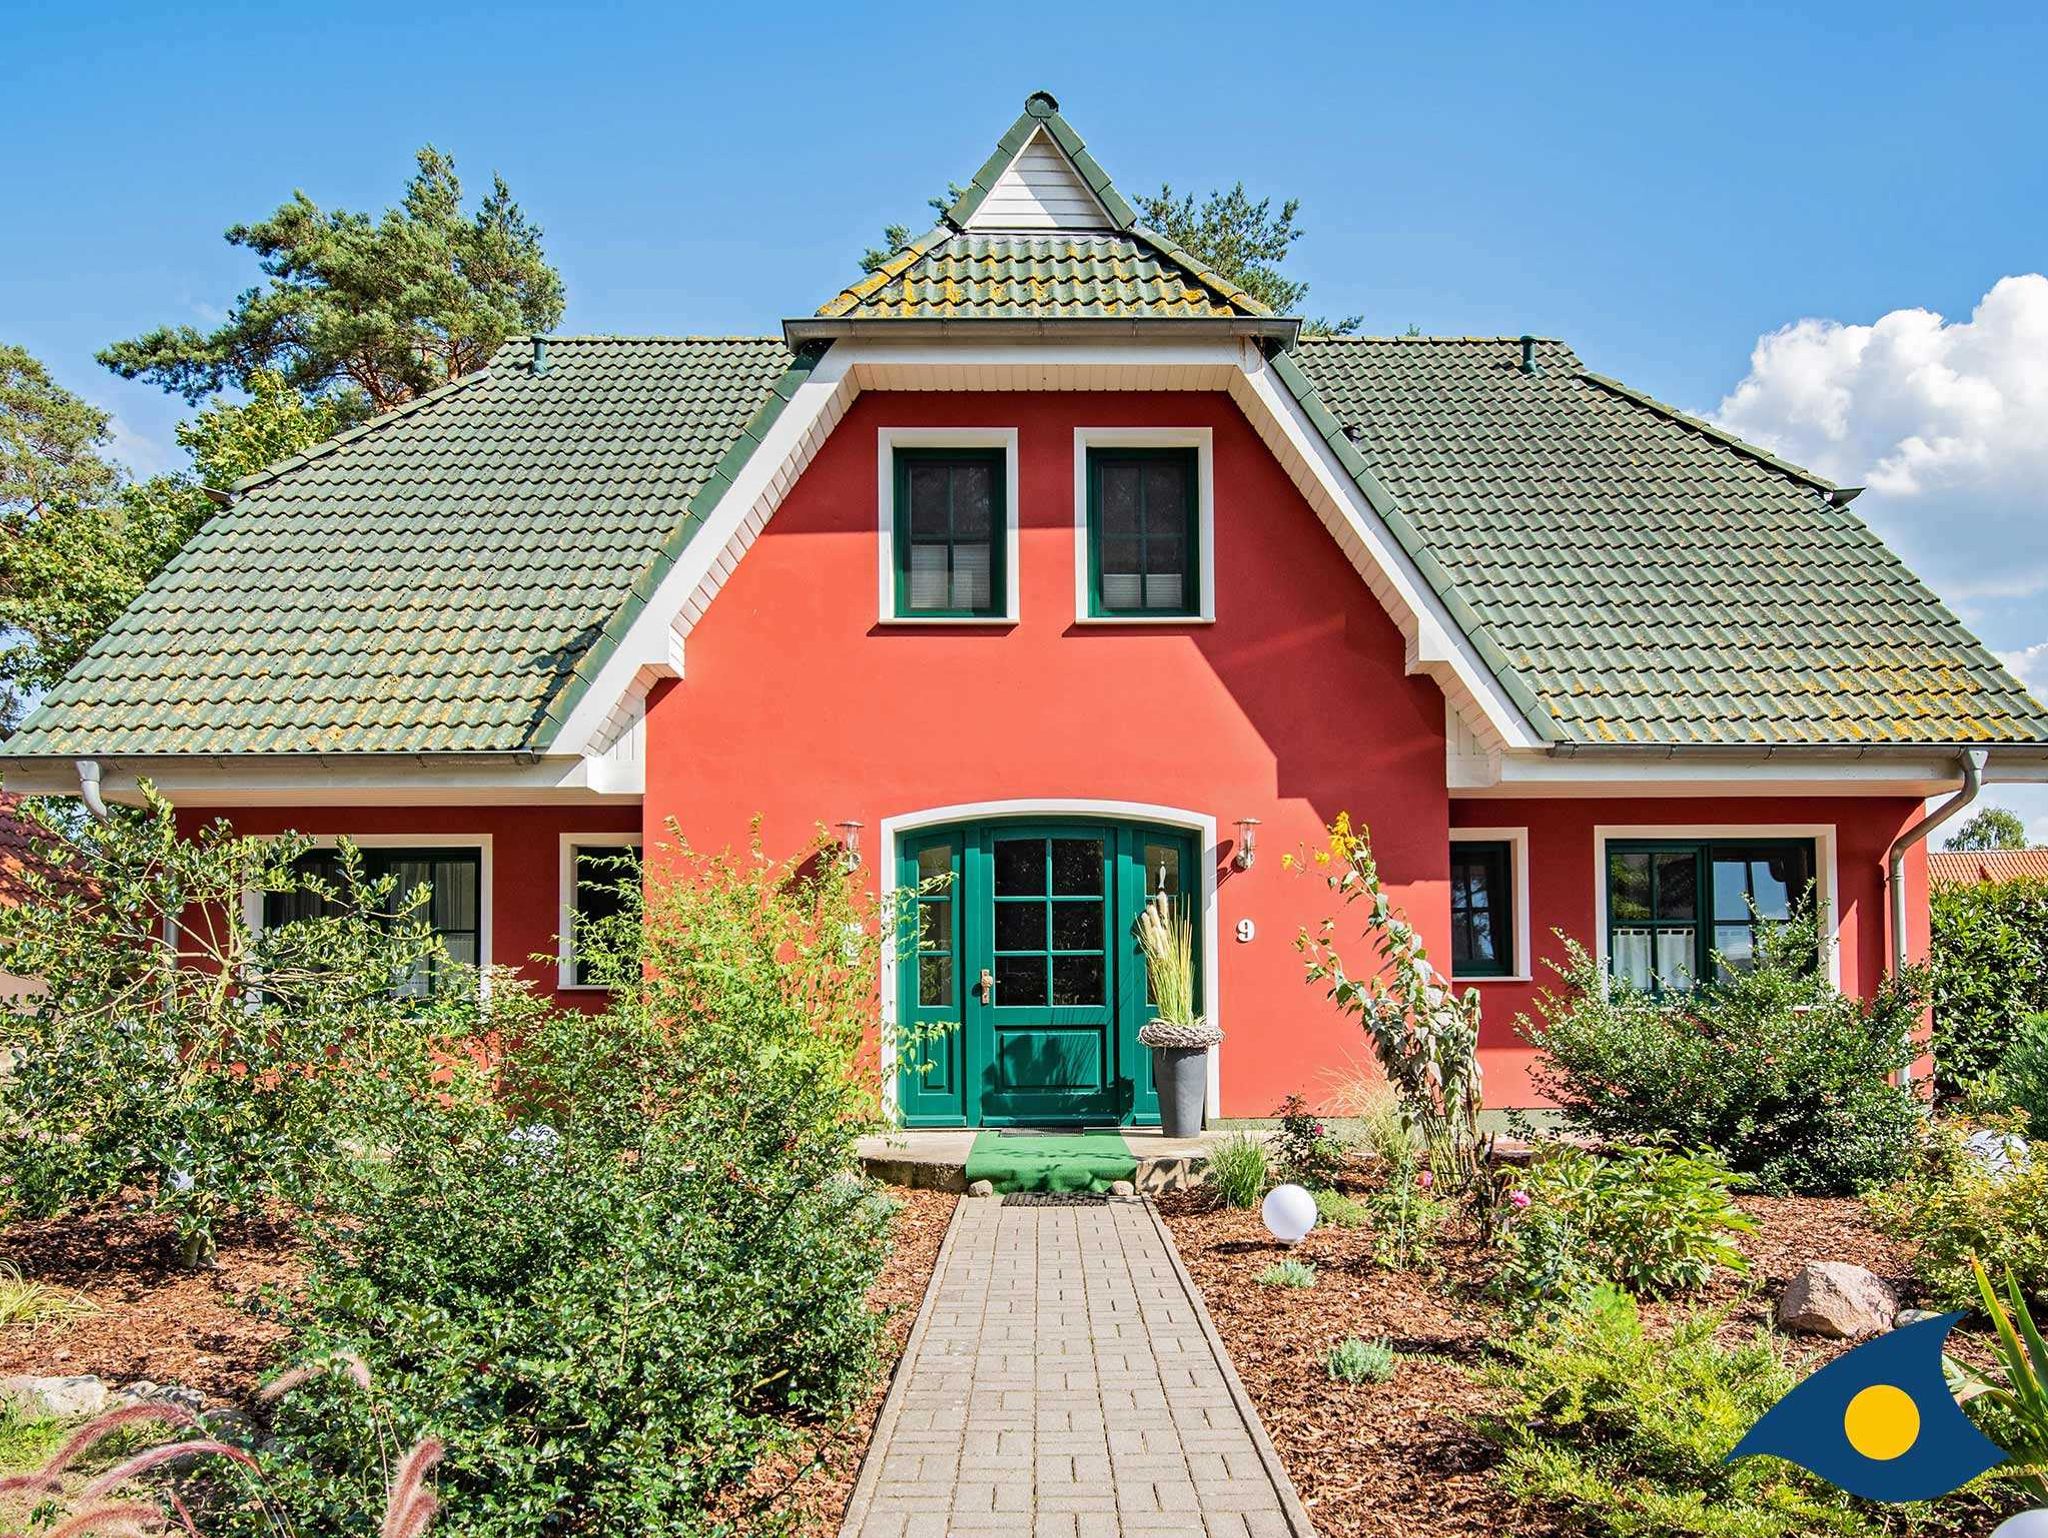 Hochwertig ausgestattetes Reetdachhaus mit Garten in idyllischer Ferienhaussiedlung